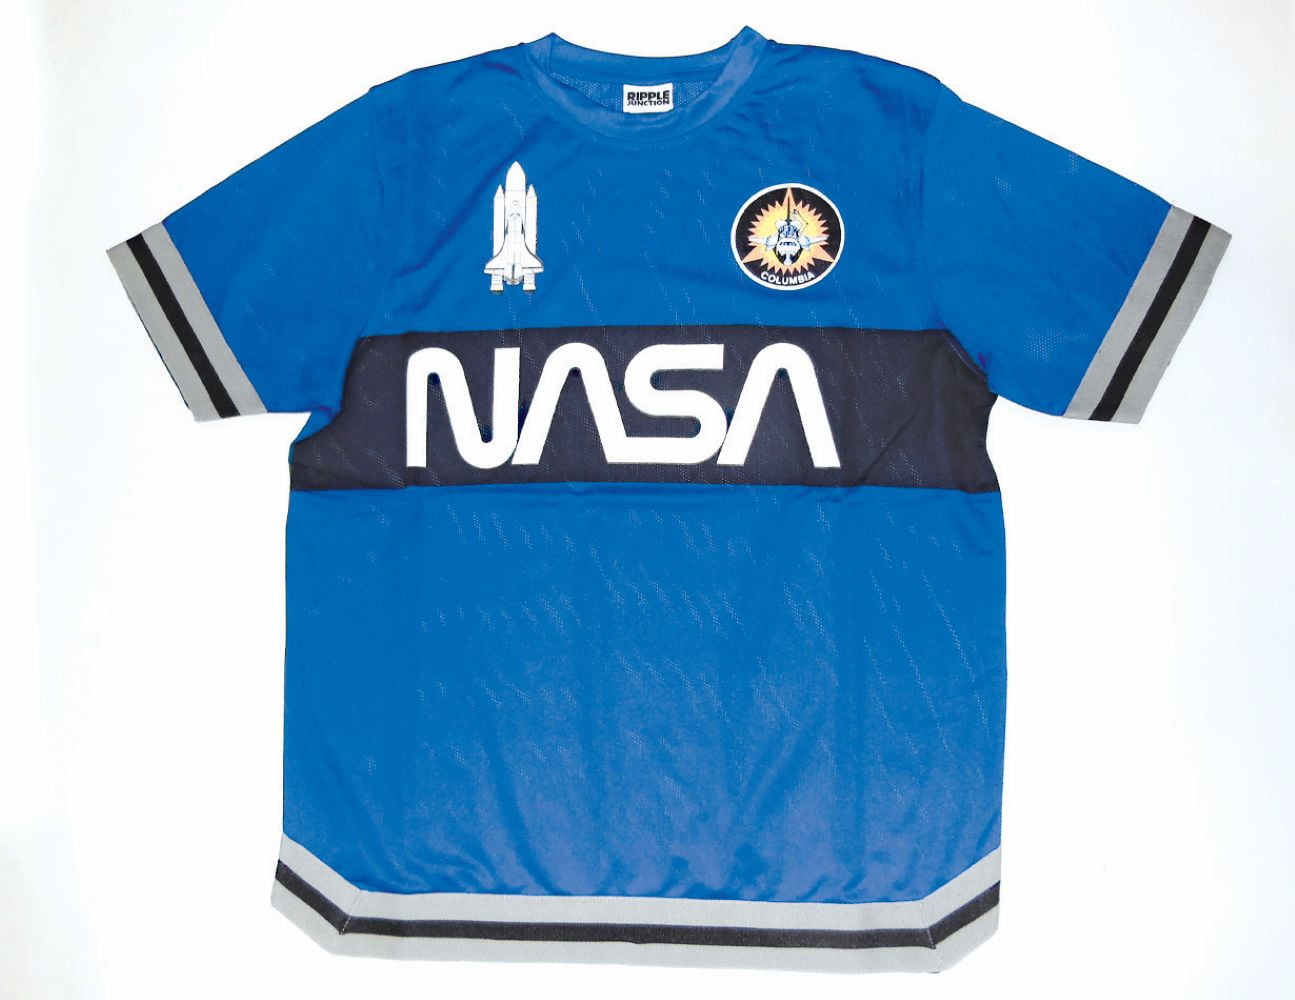 royal blue soccer jersey